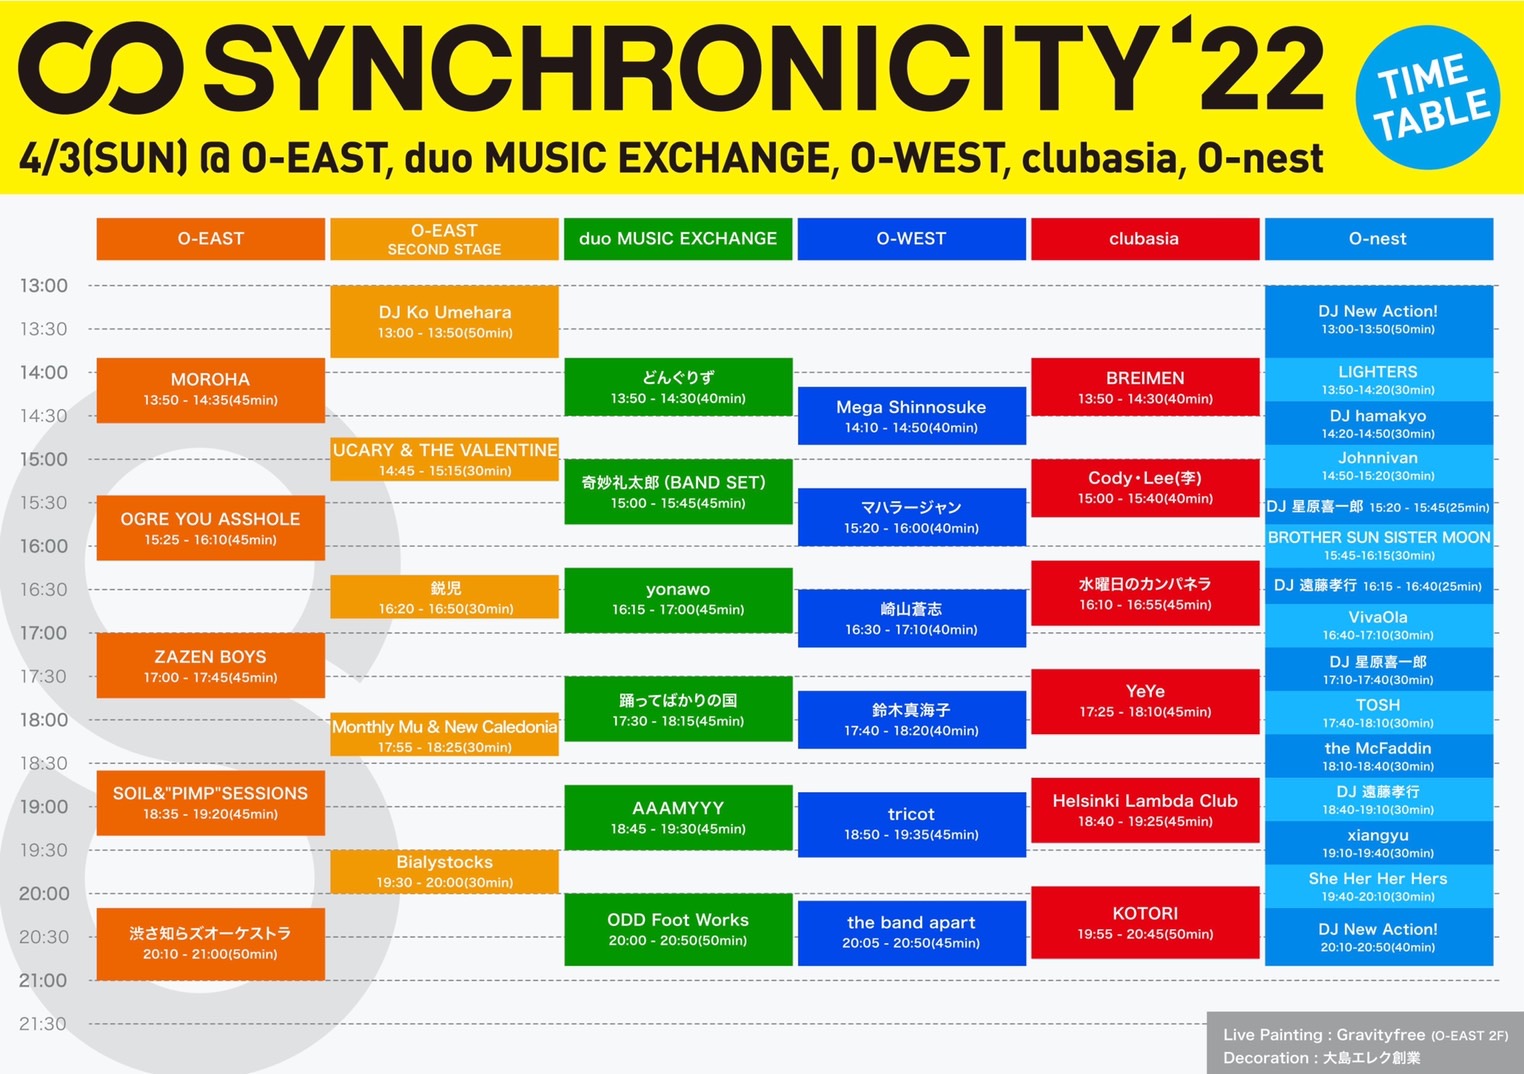 SYNCHRONICITY'22 TIMETABLE 4/3(SUN)